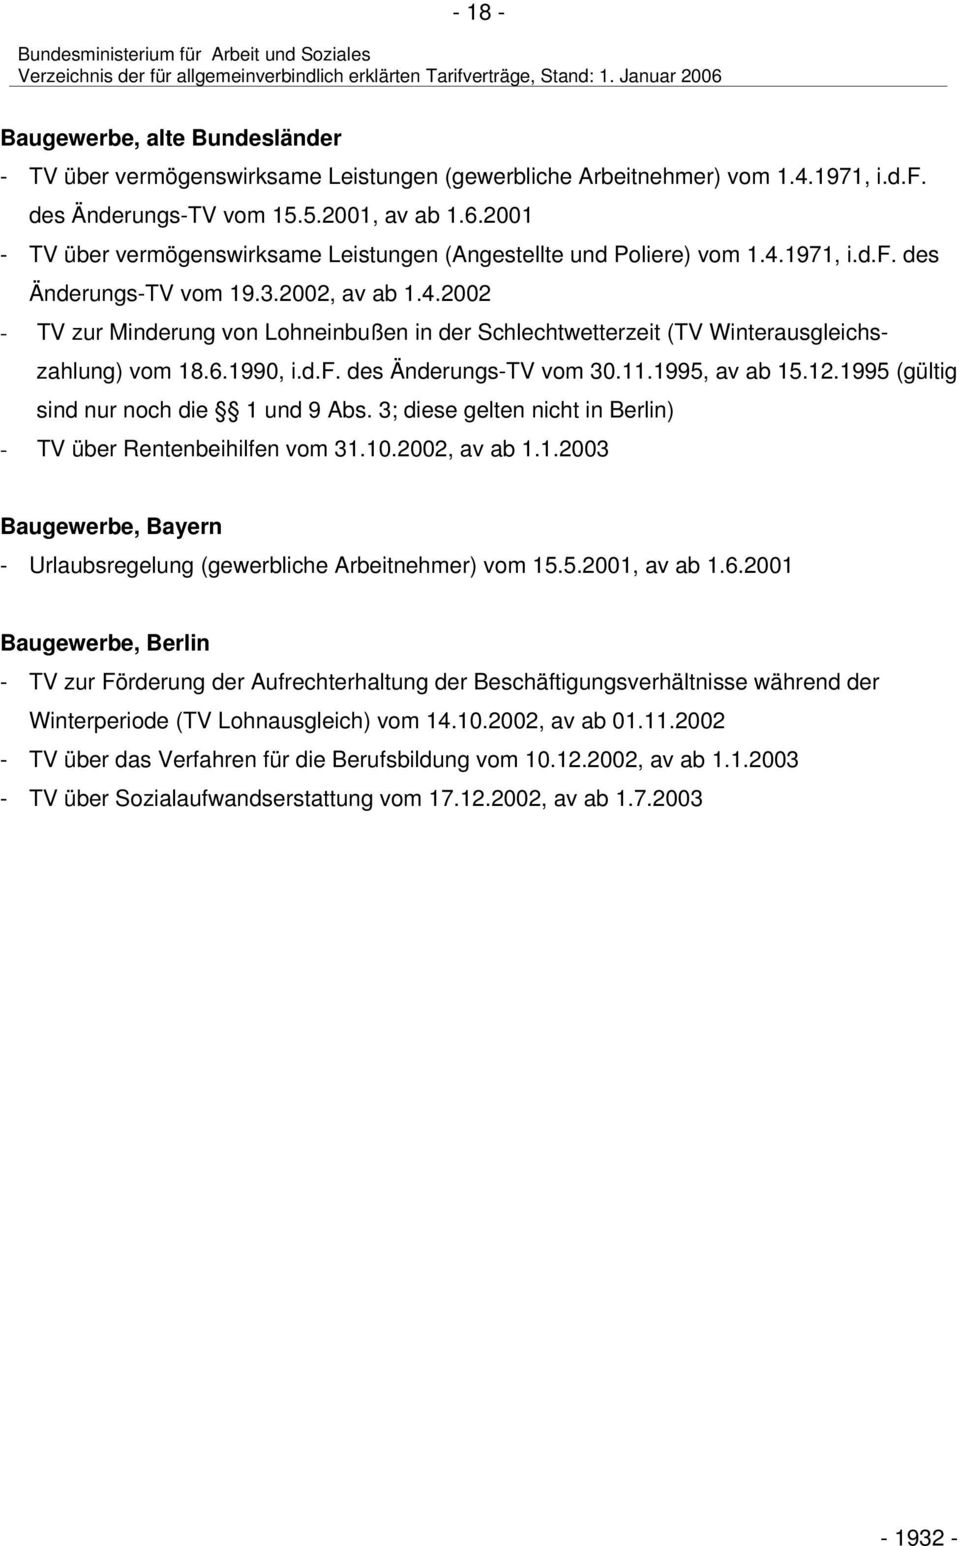 6.1990, i.d.f. des Änderungs-TV vom 30.11.1995, av ab 15.12.1995 (gültig sind nur noch die 1 und 9 Abs. 3; diese gelten nicht in Berlin) - TV über Rentenbeihilfen vom 31.10.2002, av ab 1.1.2003 Baugewerbe, Bayern - Urlaubsregelung (gewerbliche Arbeitnehmer) vom 15.